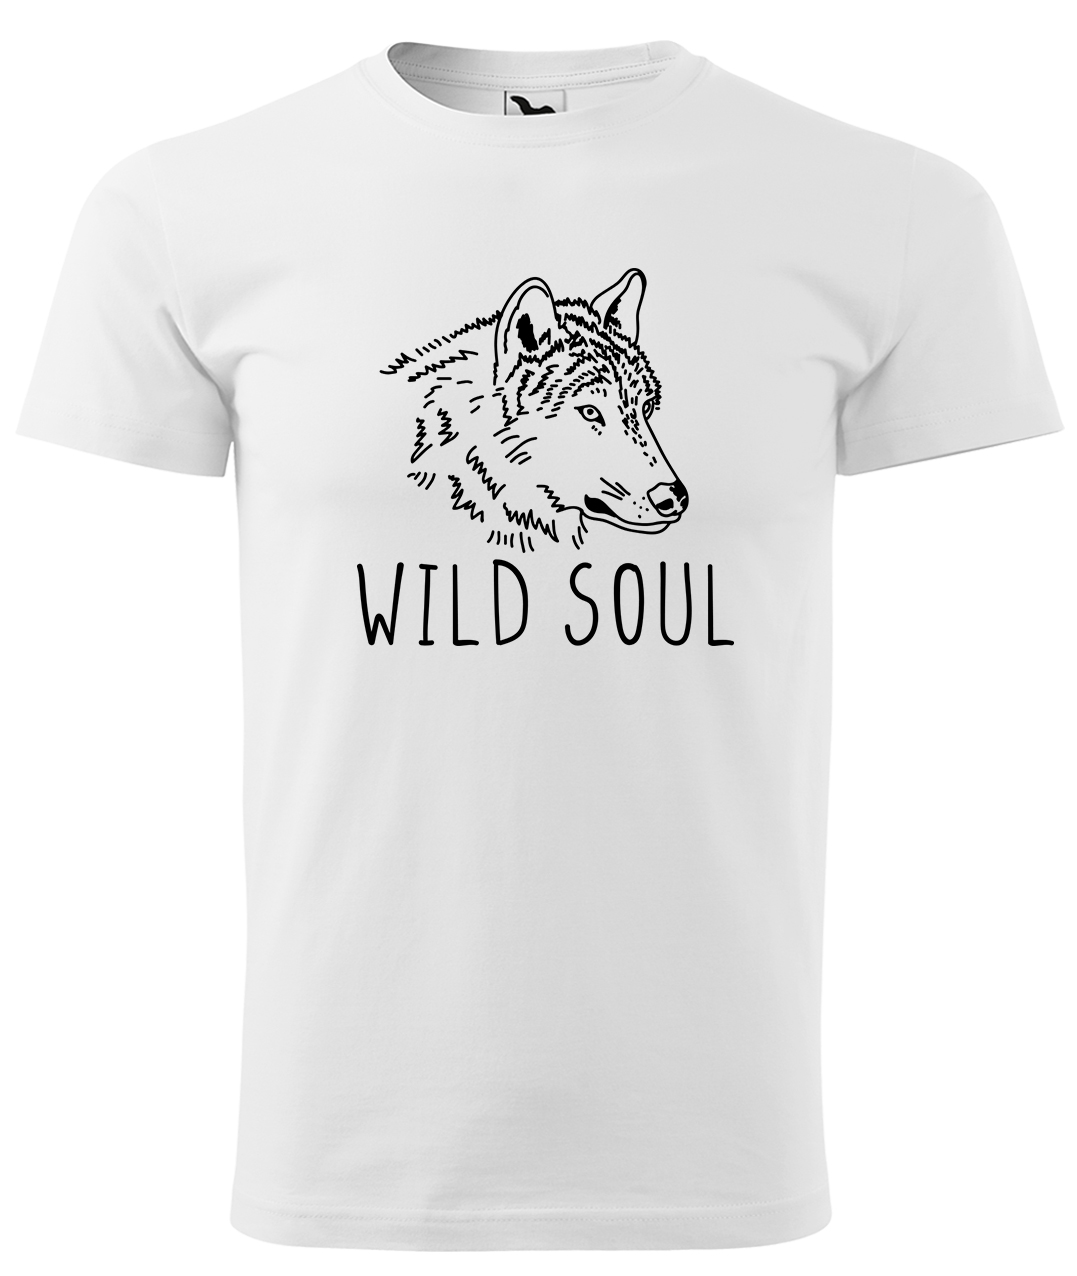 Dětské tričko s vlkem - Wild soul Velikost: 10 let / 146 cm, Barva: Bílá (00), Délka rukávu: Krátký rukáv